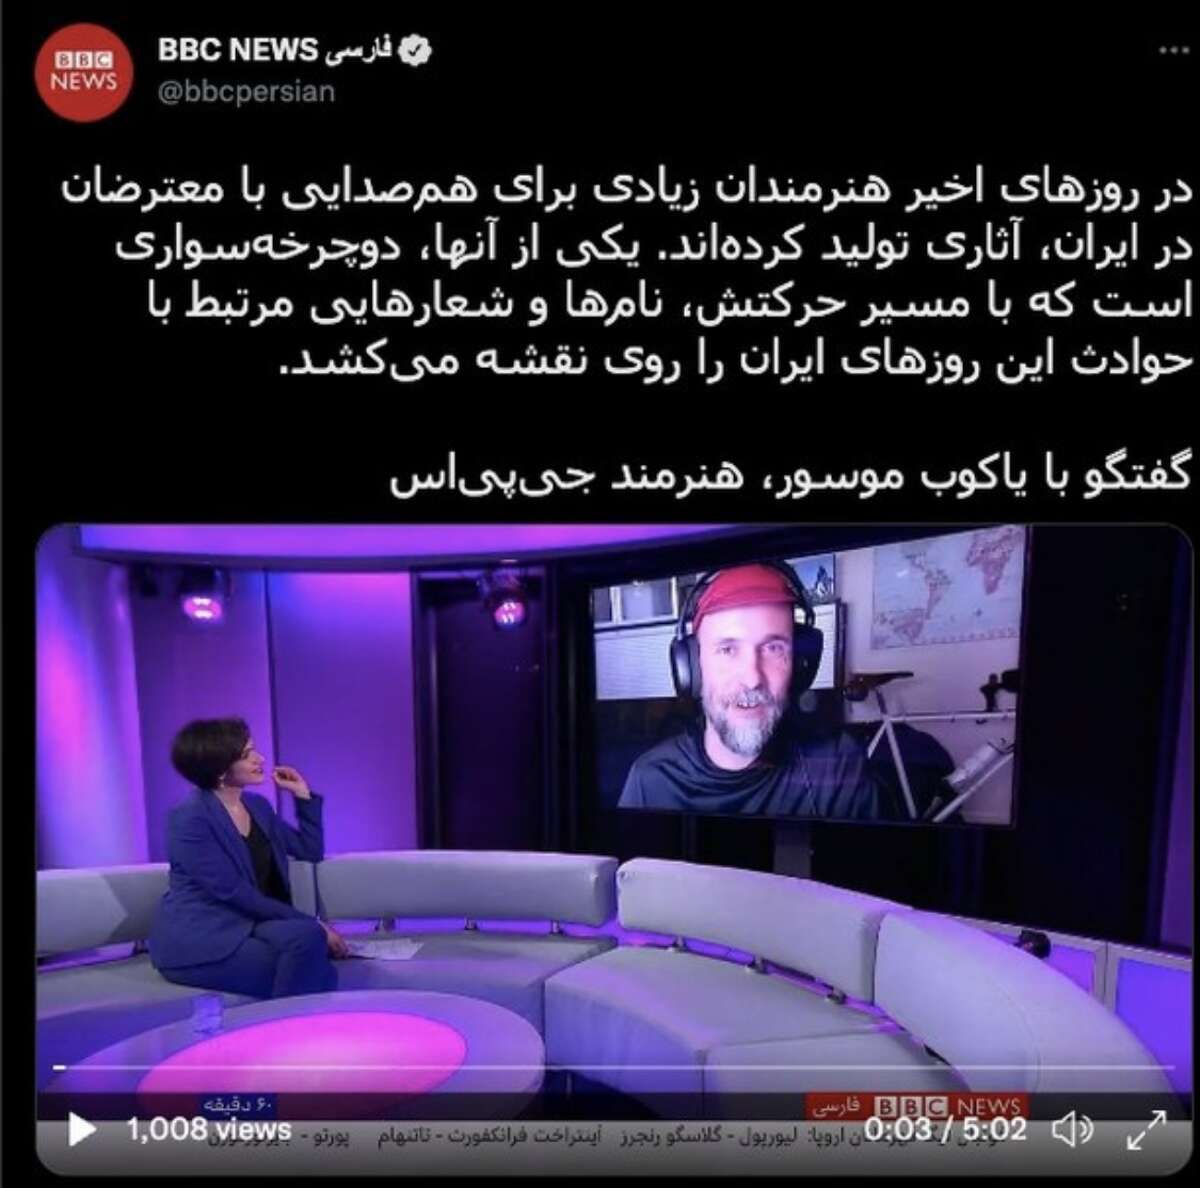 Jakub Mosur fue entrevistado por BBC Persian sobre su arte GPS en apoyo de las protestas en Irán provocadas por la muerte de Mahsa Amini.